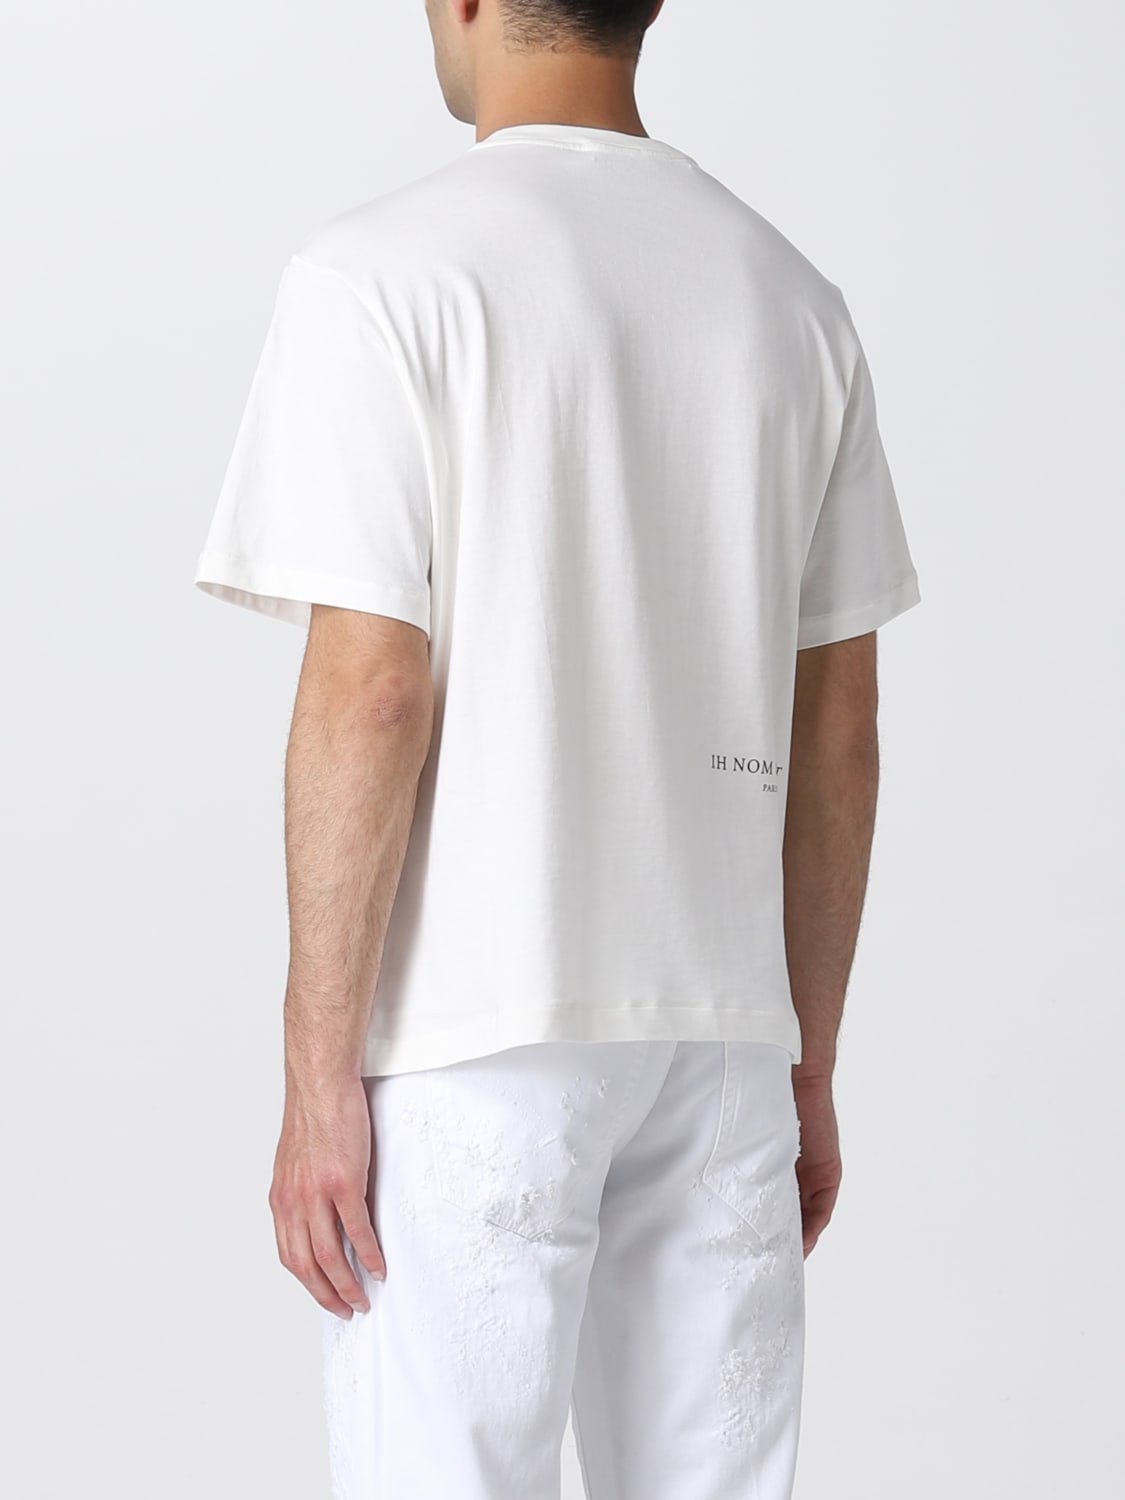 IH NOM UH NIT: t-shirt for man - White | Ih Nom Uh Nit t-shirt NUS22264 ...